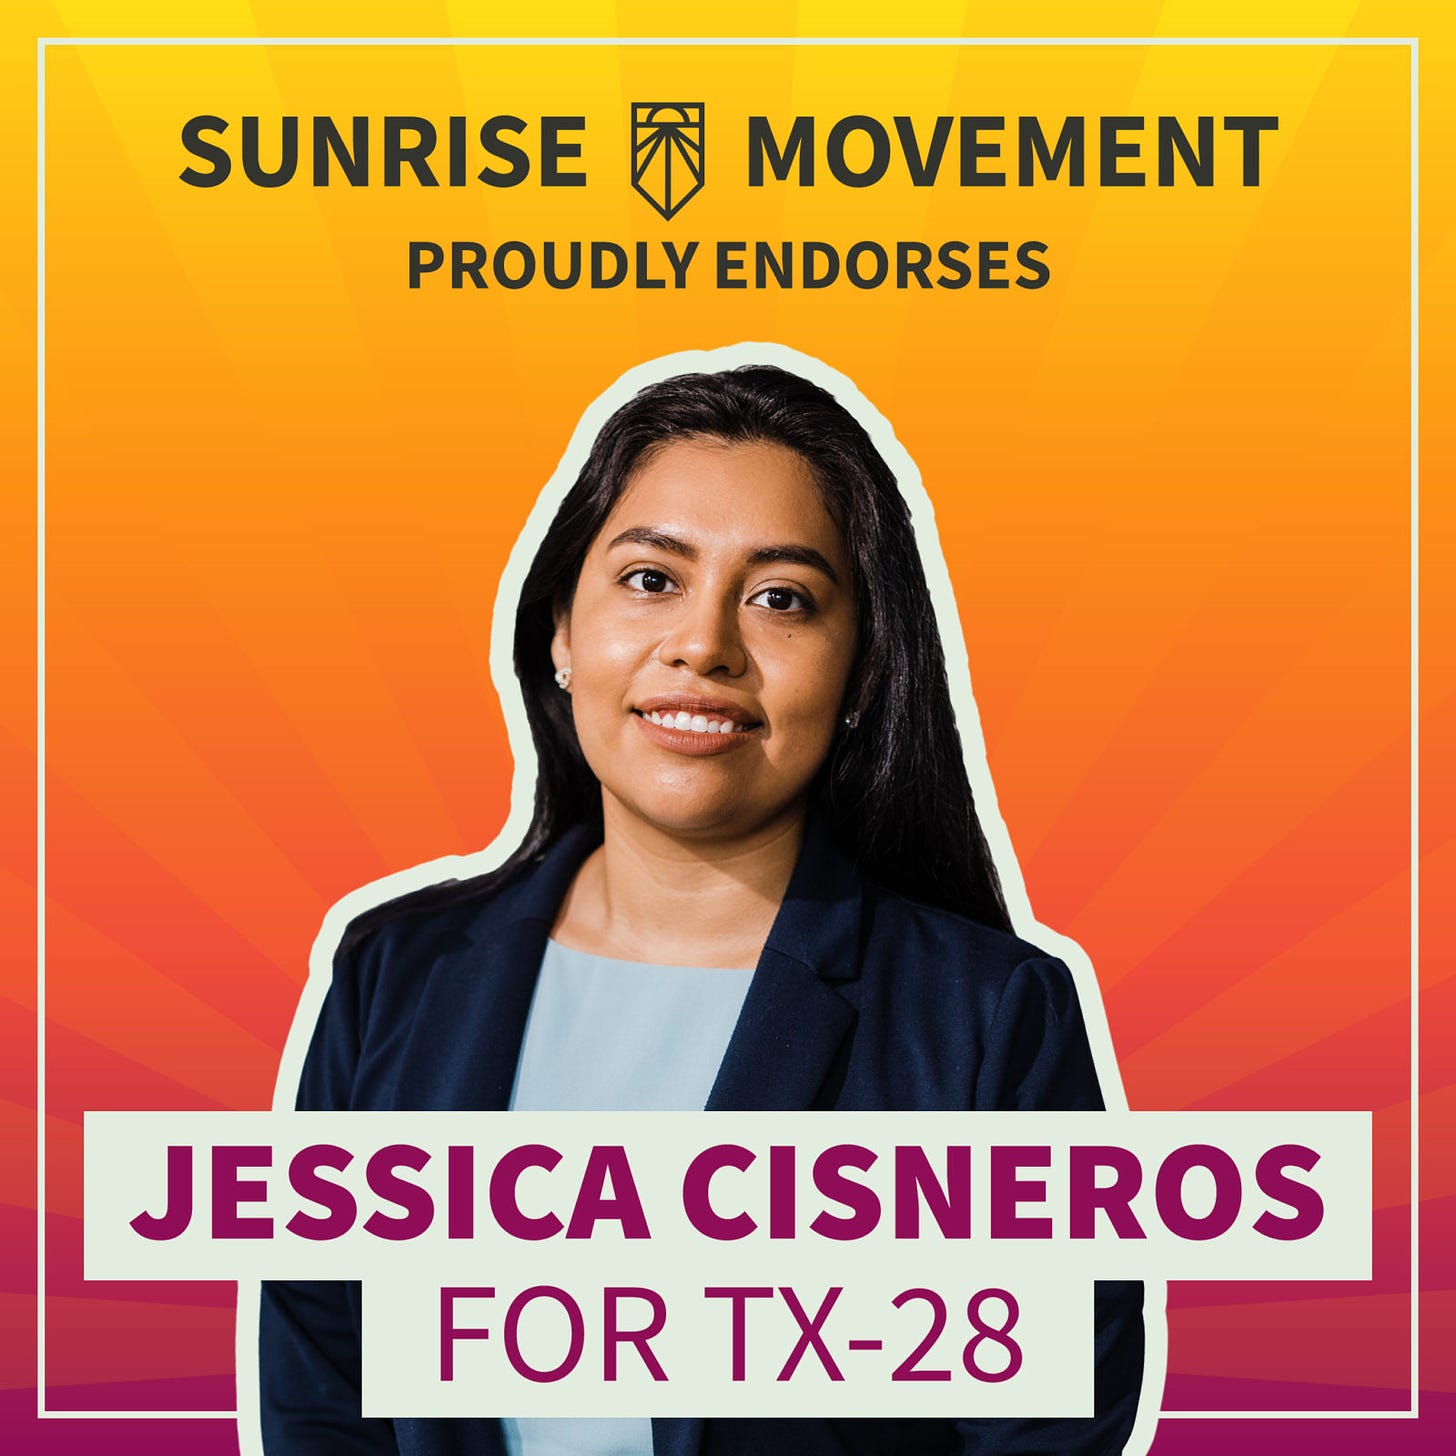 Jessica Cisneros for TX-28 - Sunrise Movement